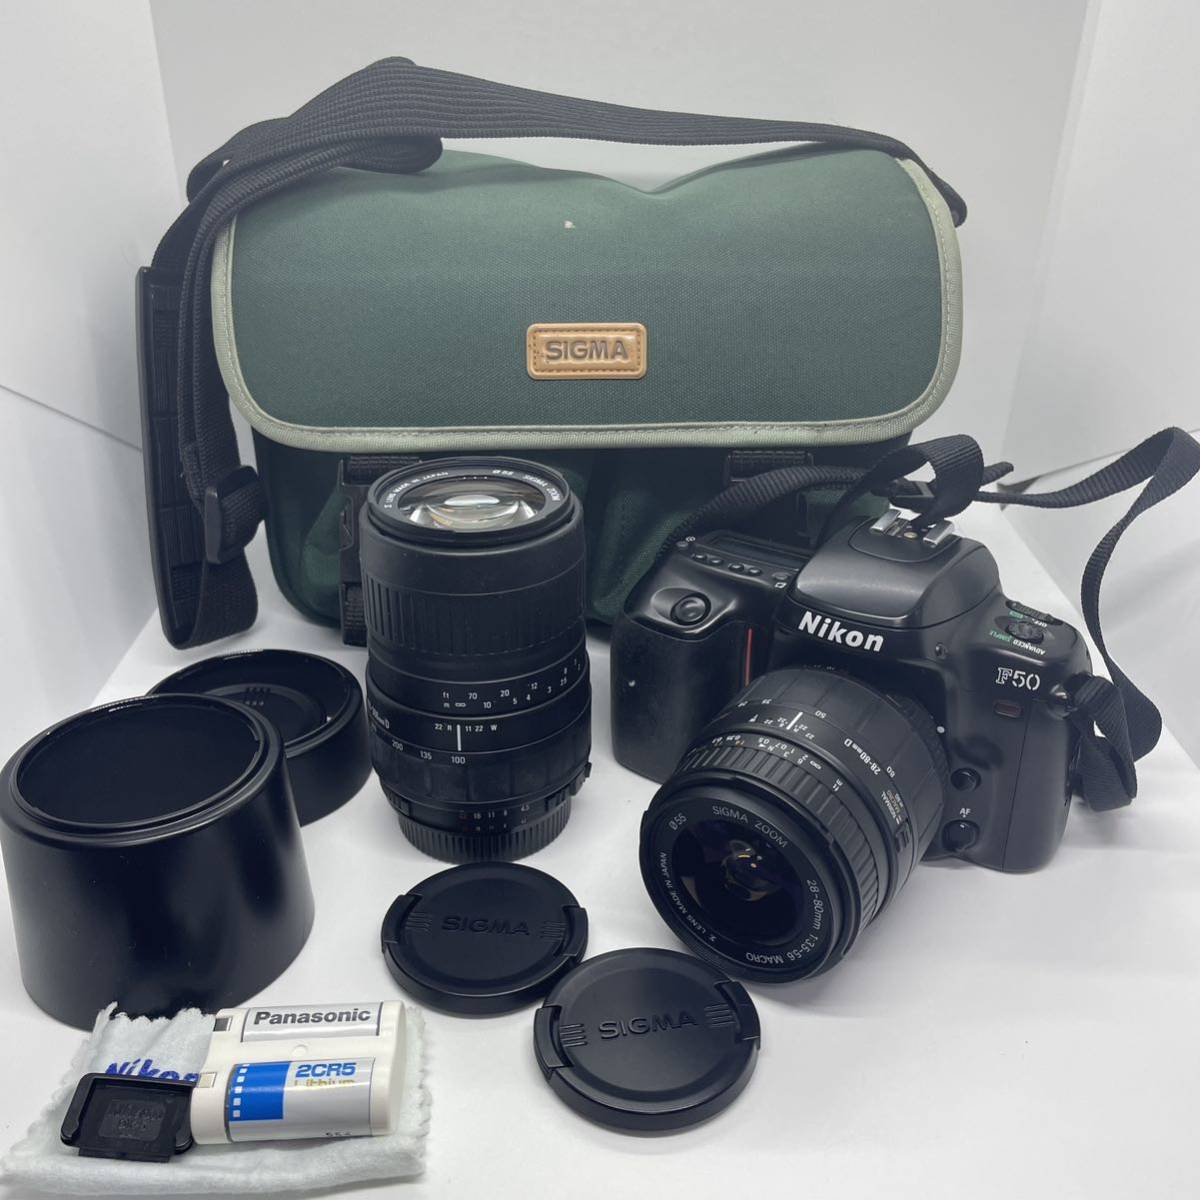 ニコン F50フィルムカメラ 望遠レンズセット - デジタルカメラ